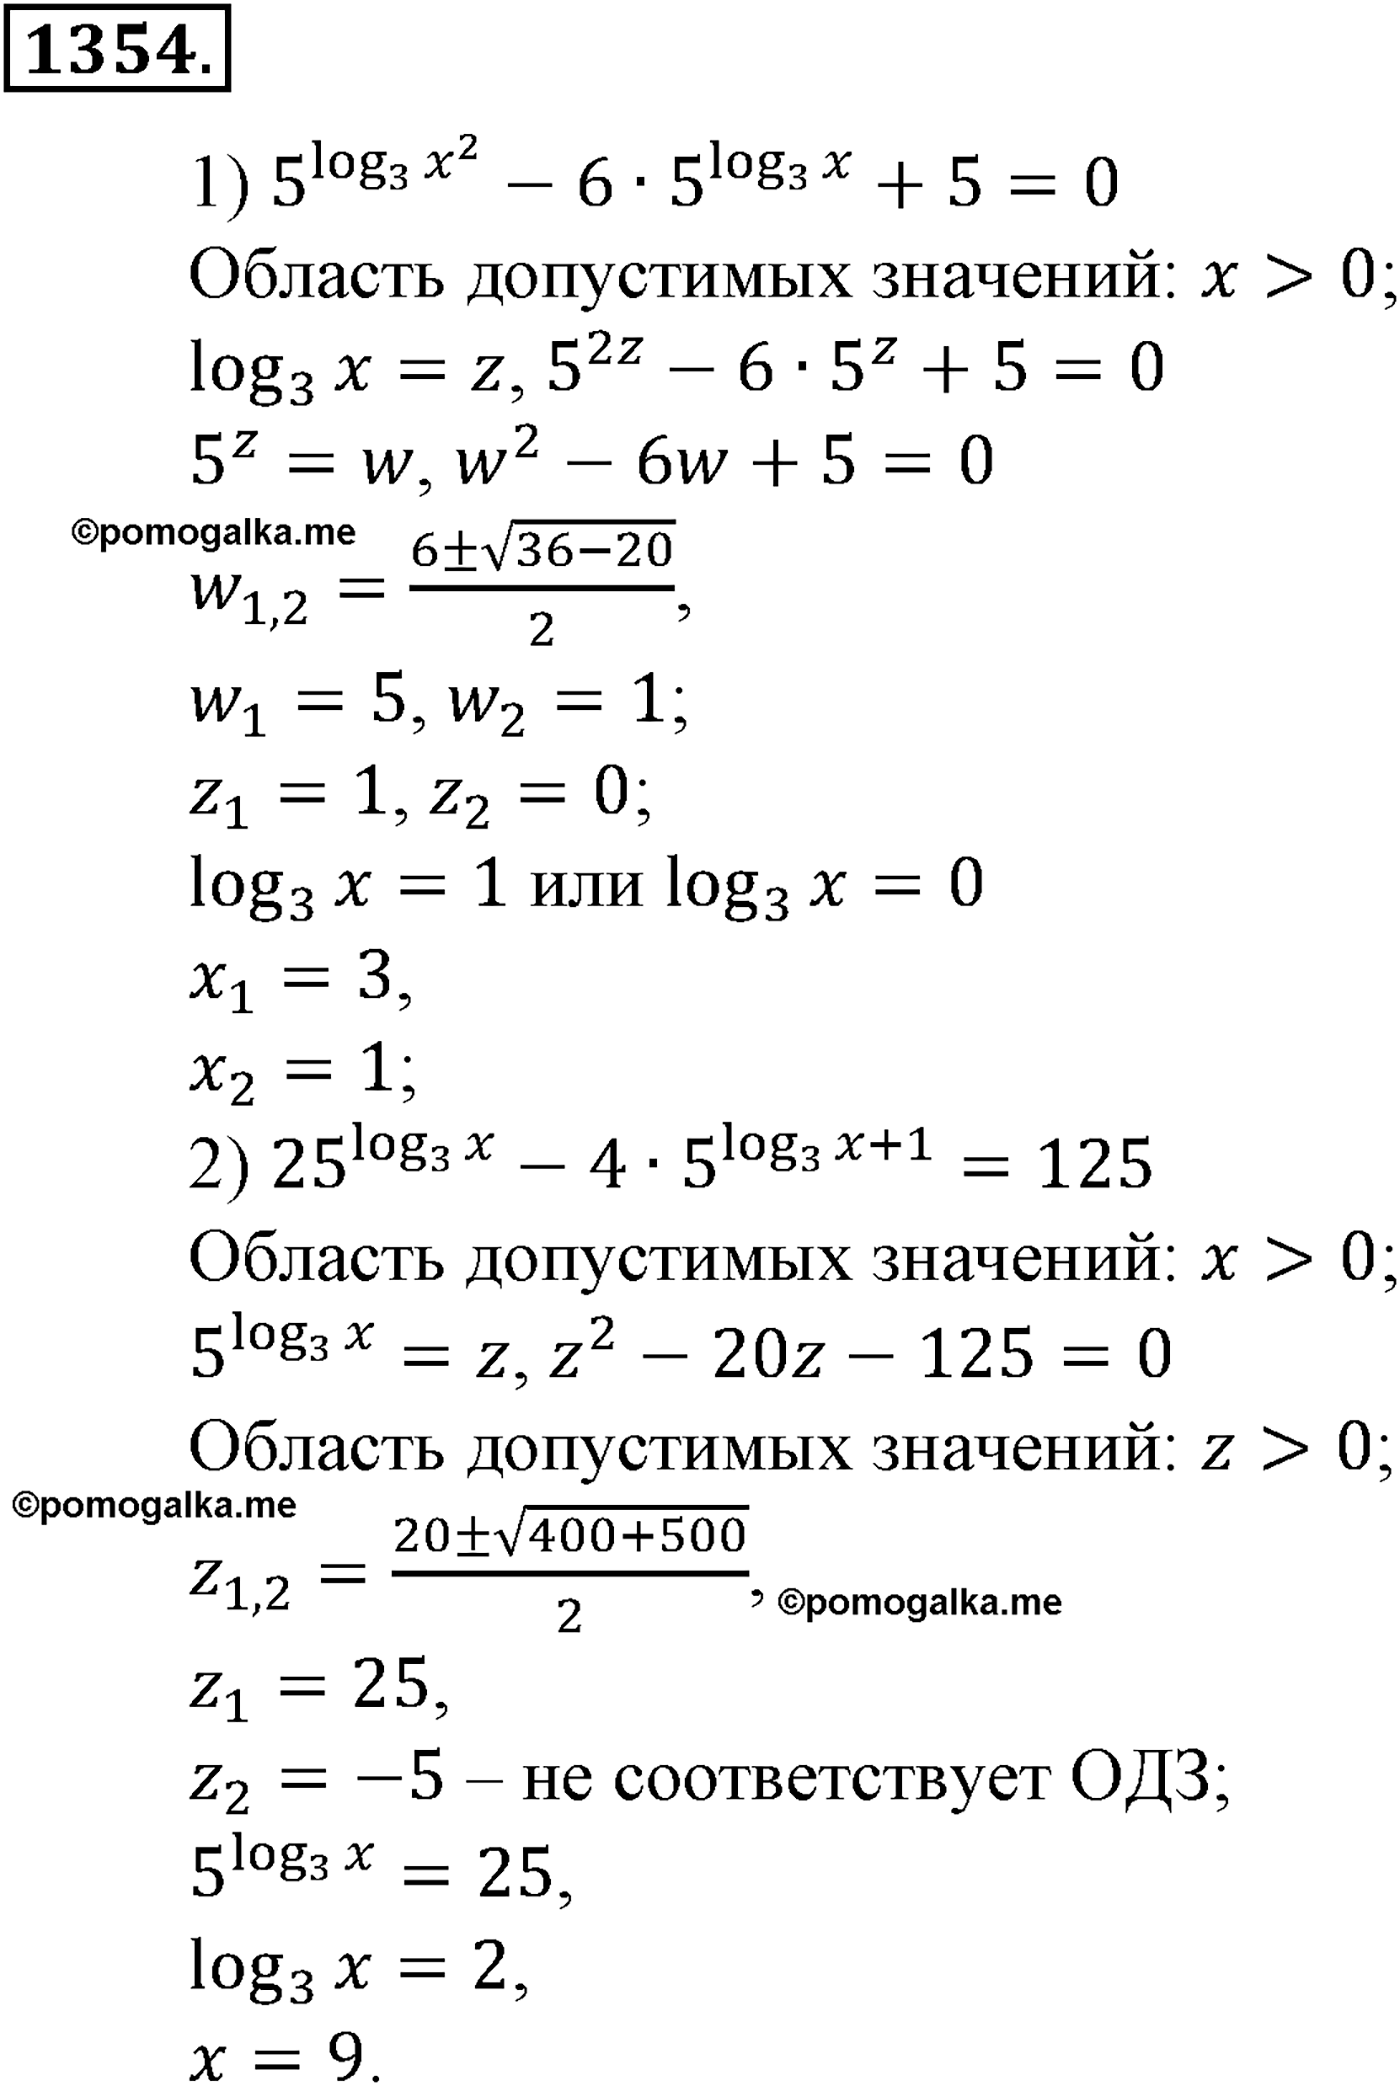 разбор задачи №1354 по алгебре за 10-11 класс из учебника Алимова, Колягина